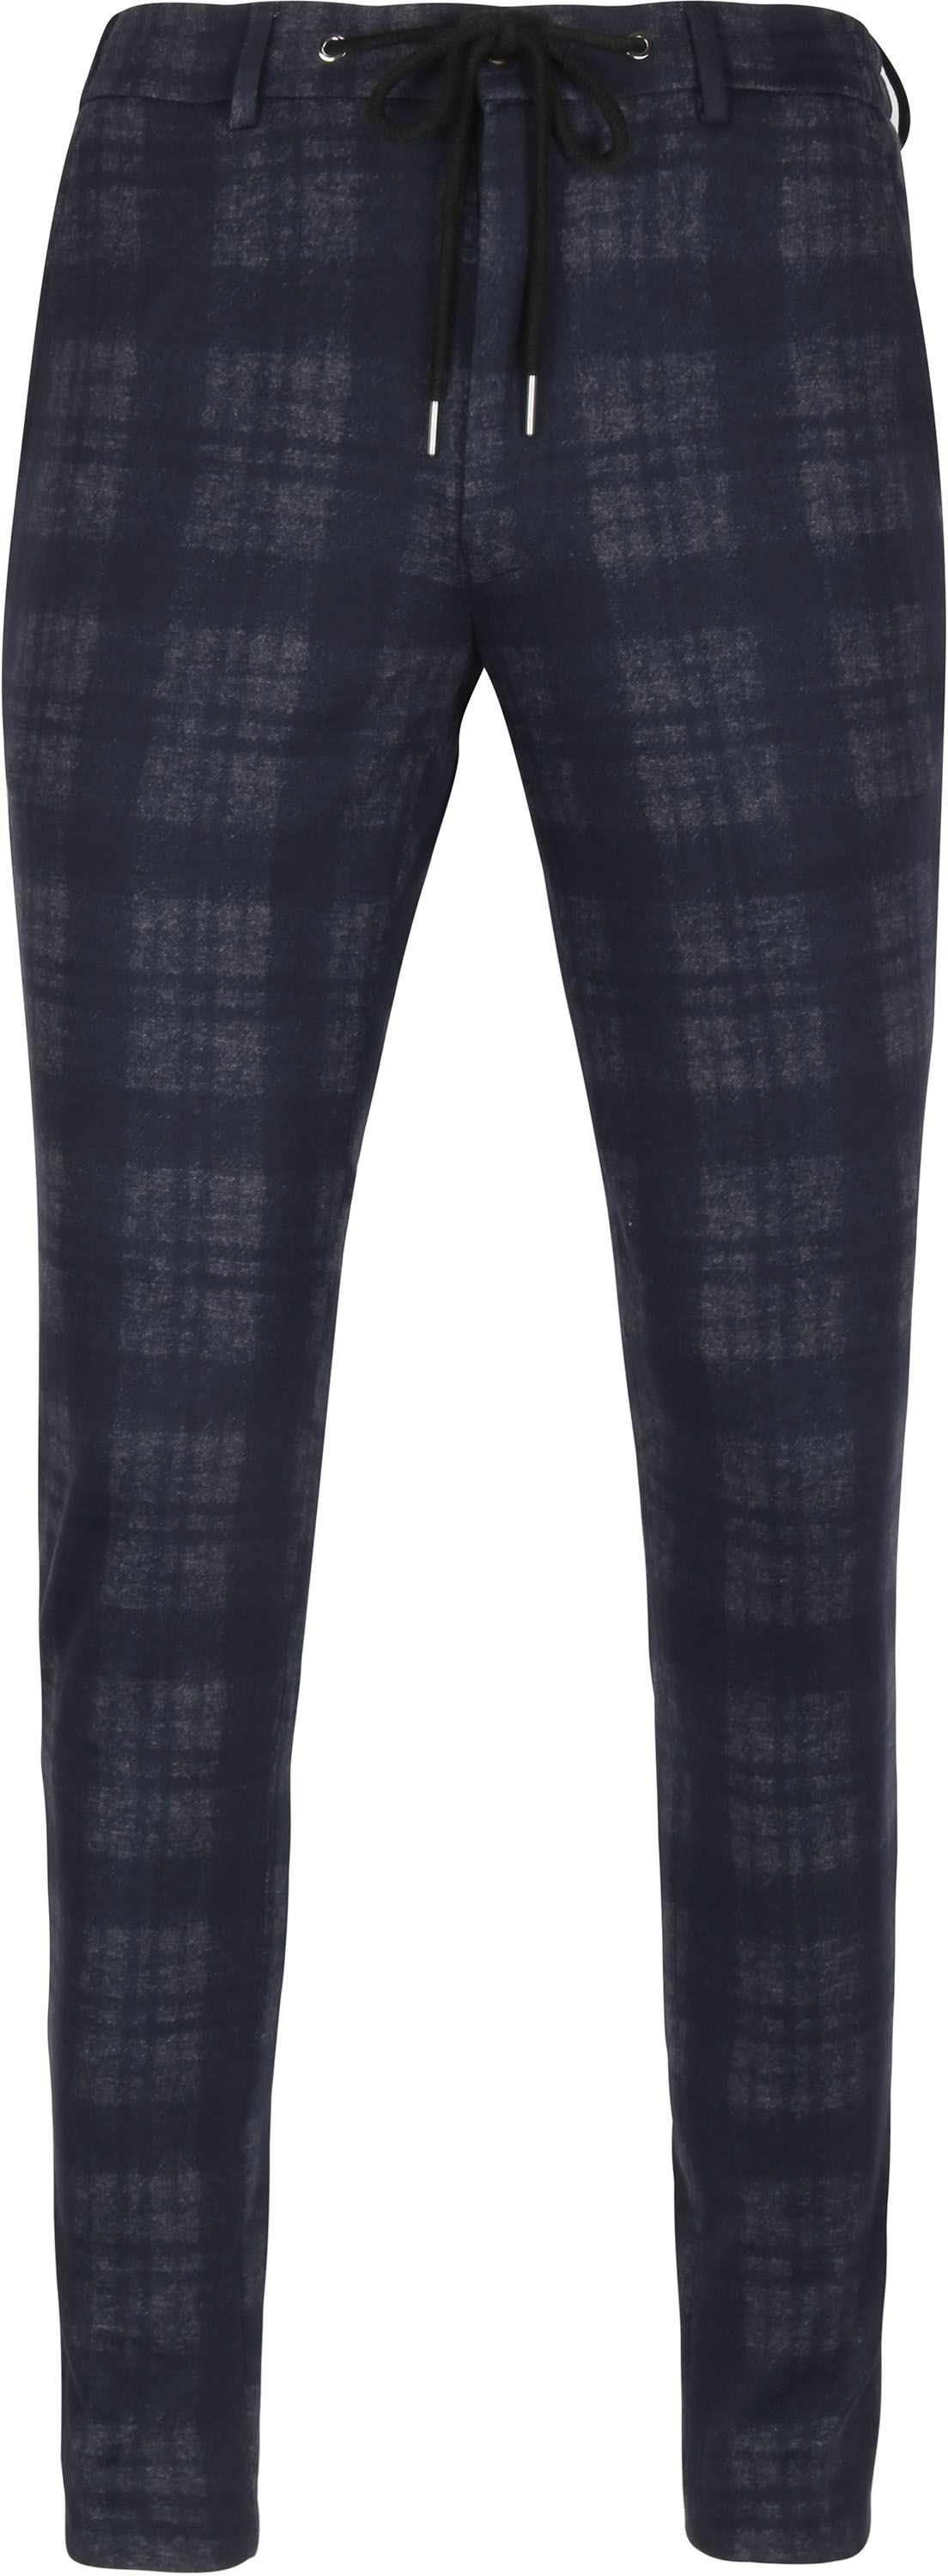 Suitable Pantalon Das Pane Antrachite Grey Dark Grey size W 34